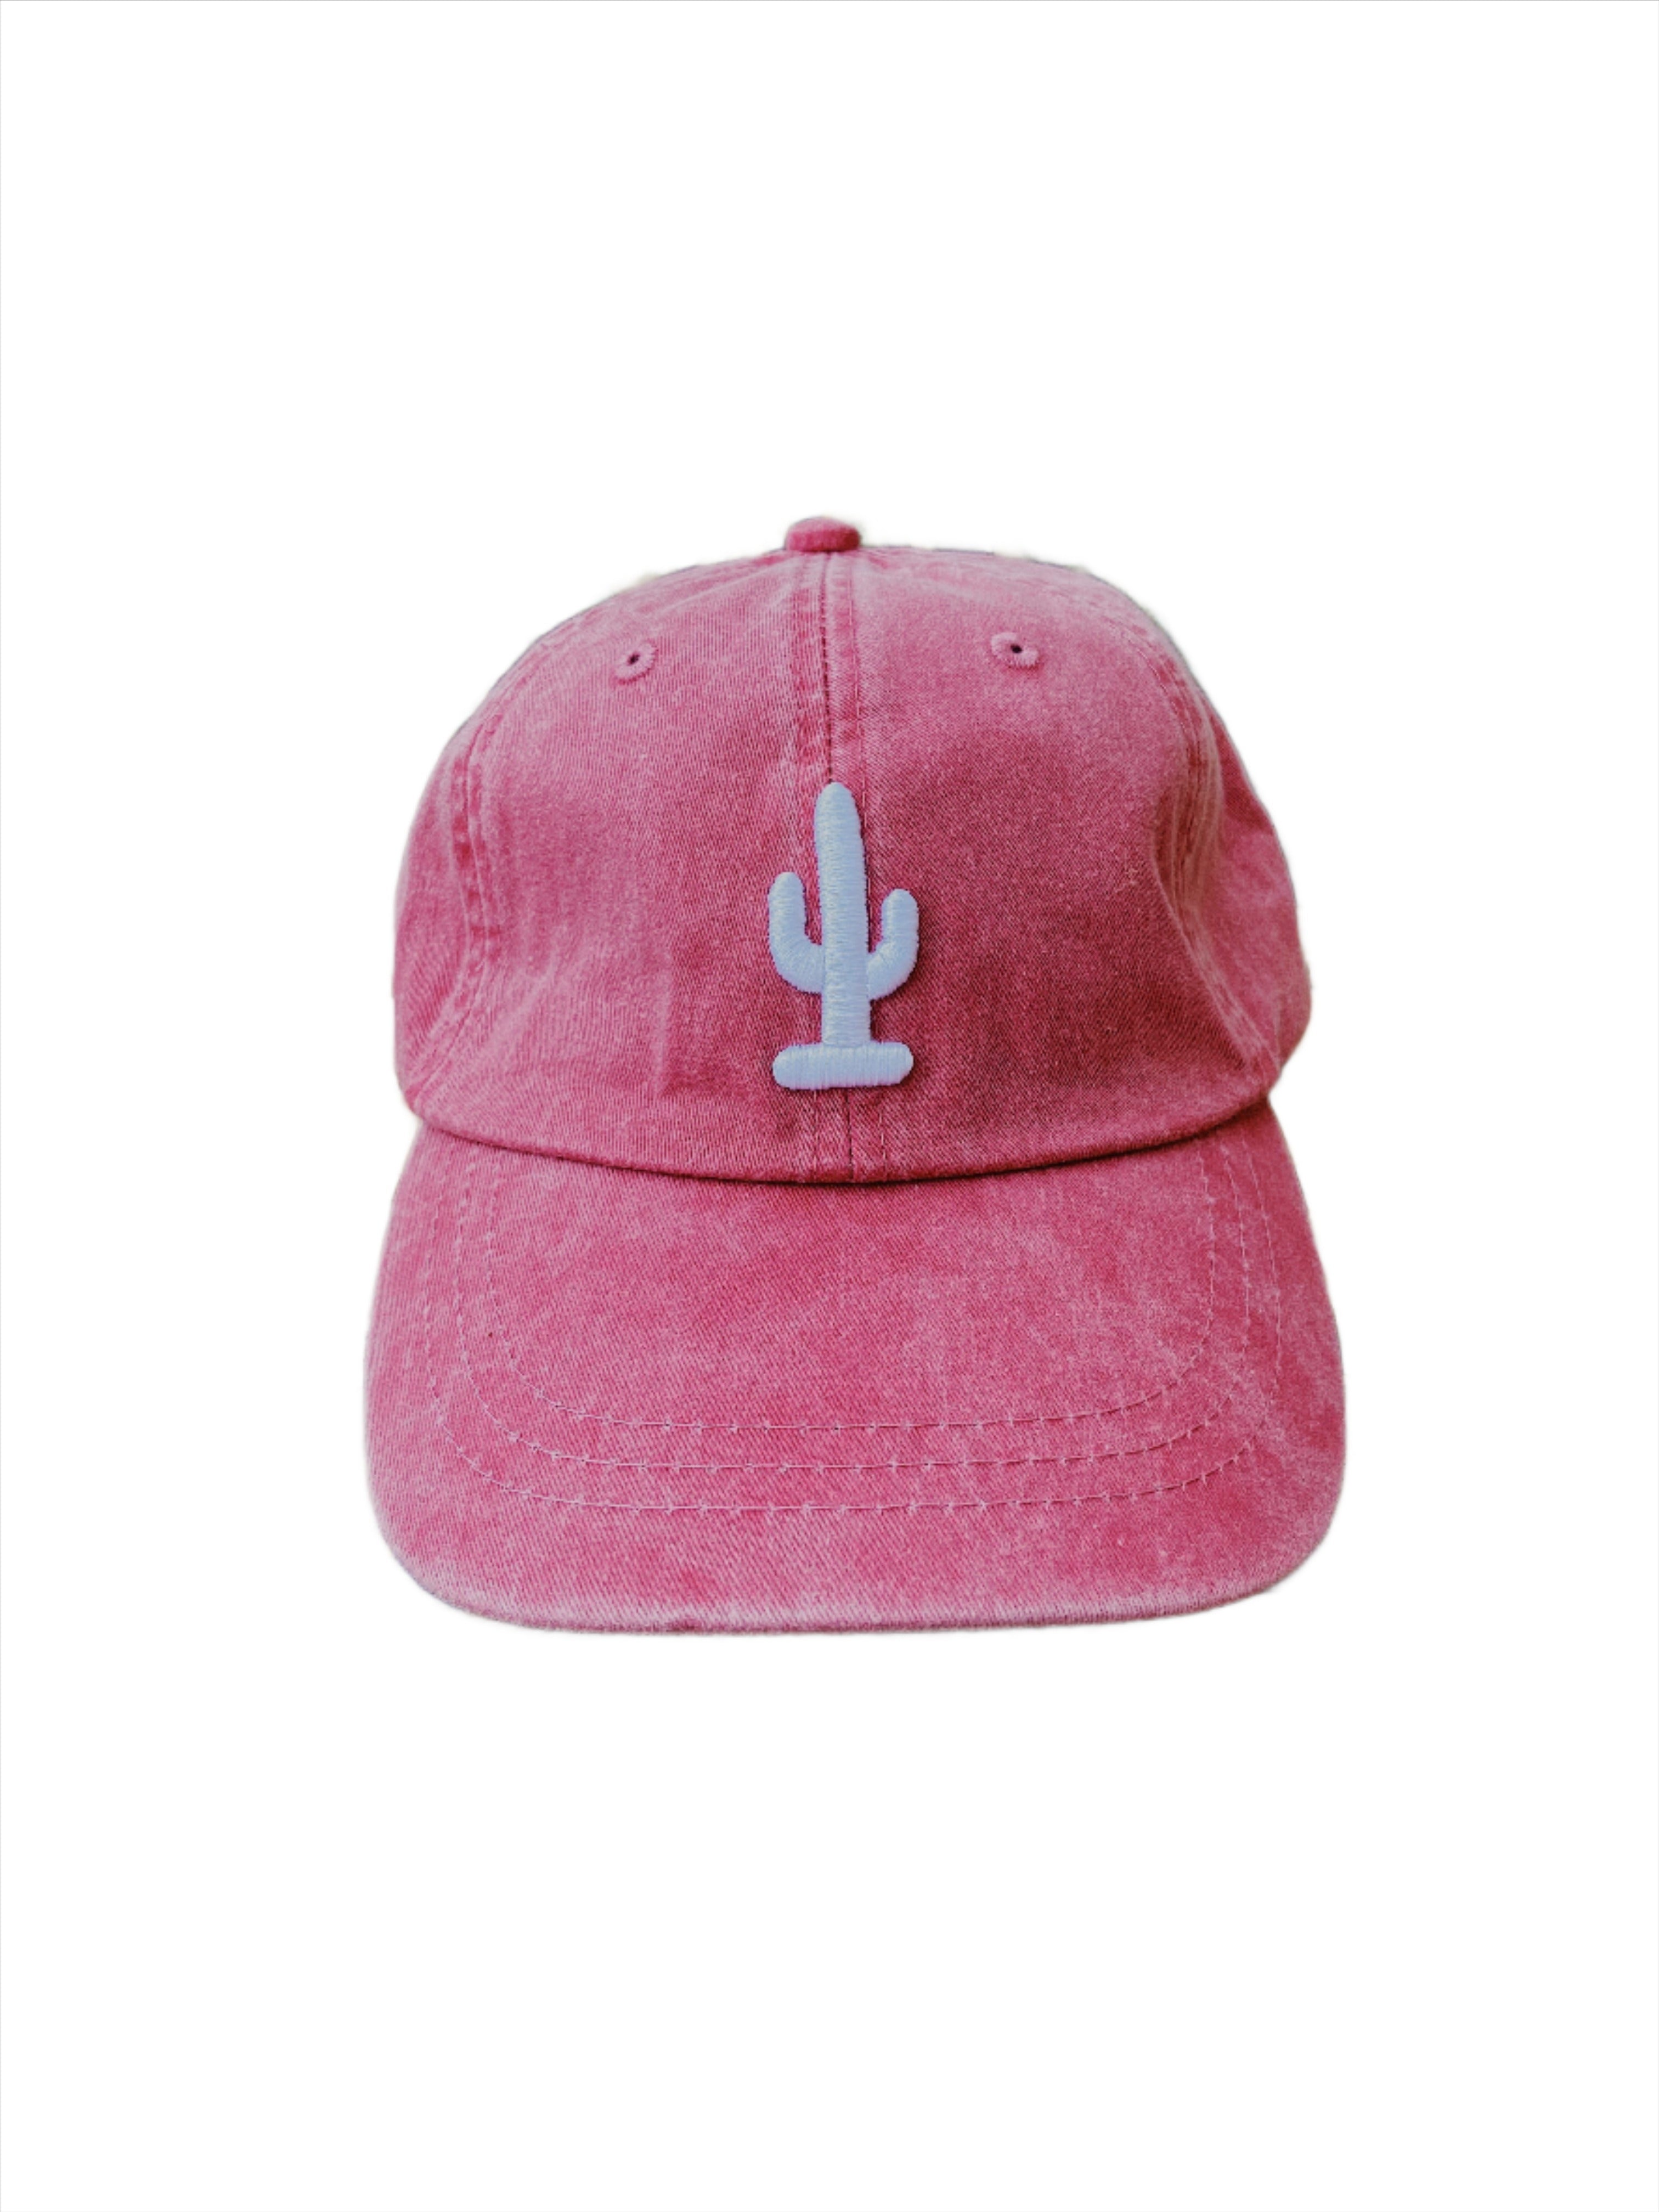 Saguaro Cactus Hat